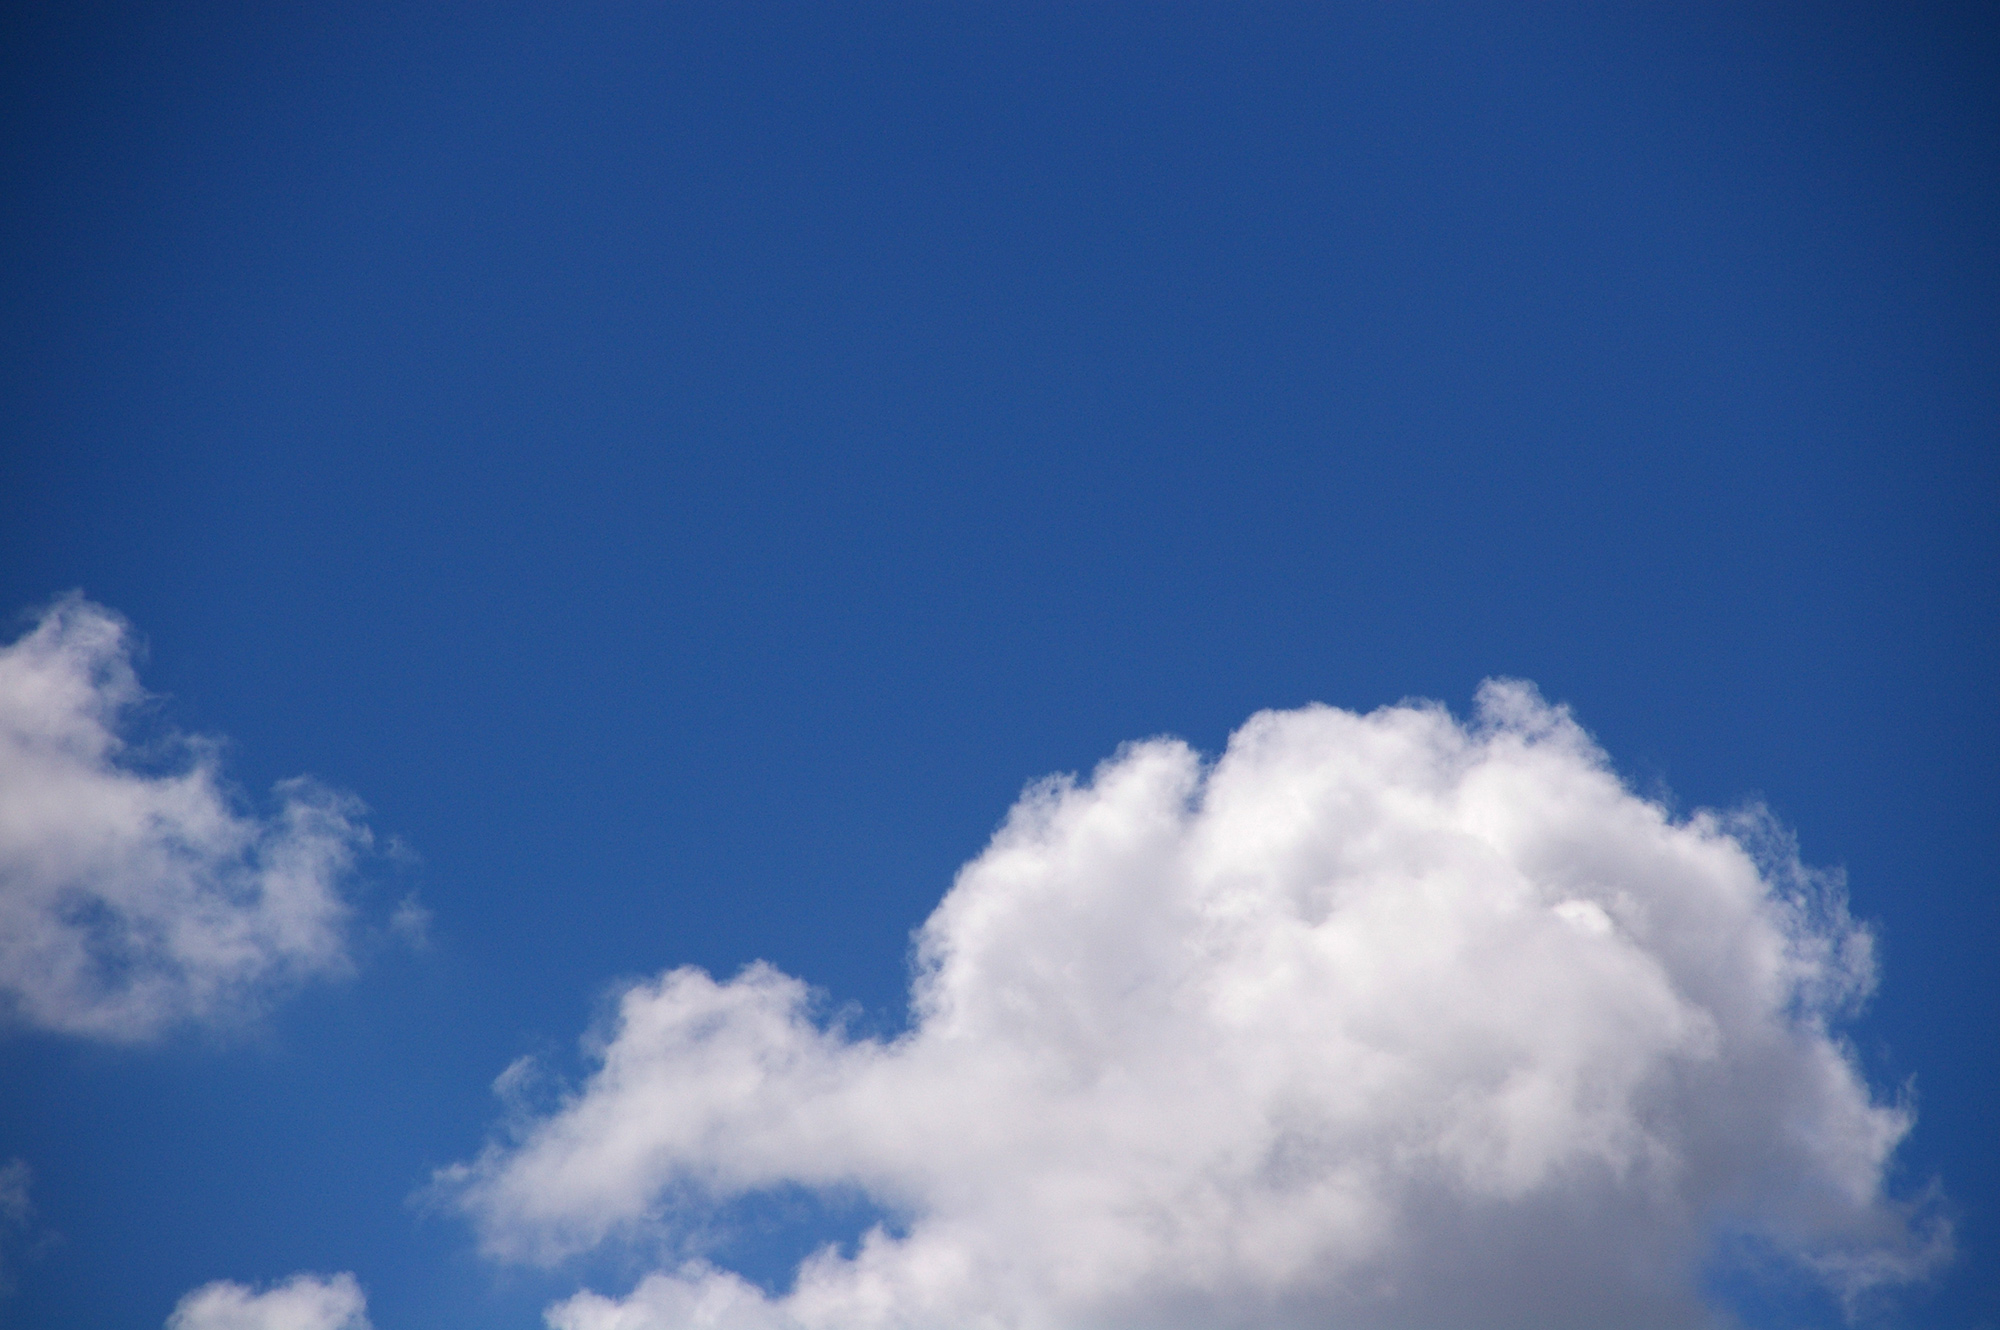 浮かぶ雲の写真のフリー素材